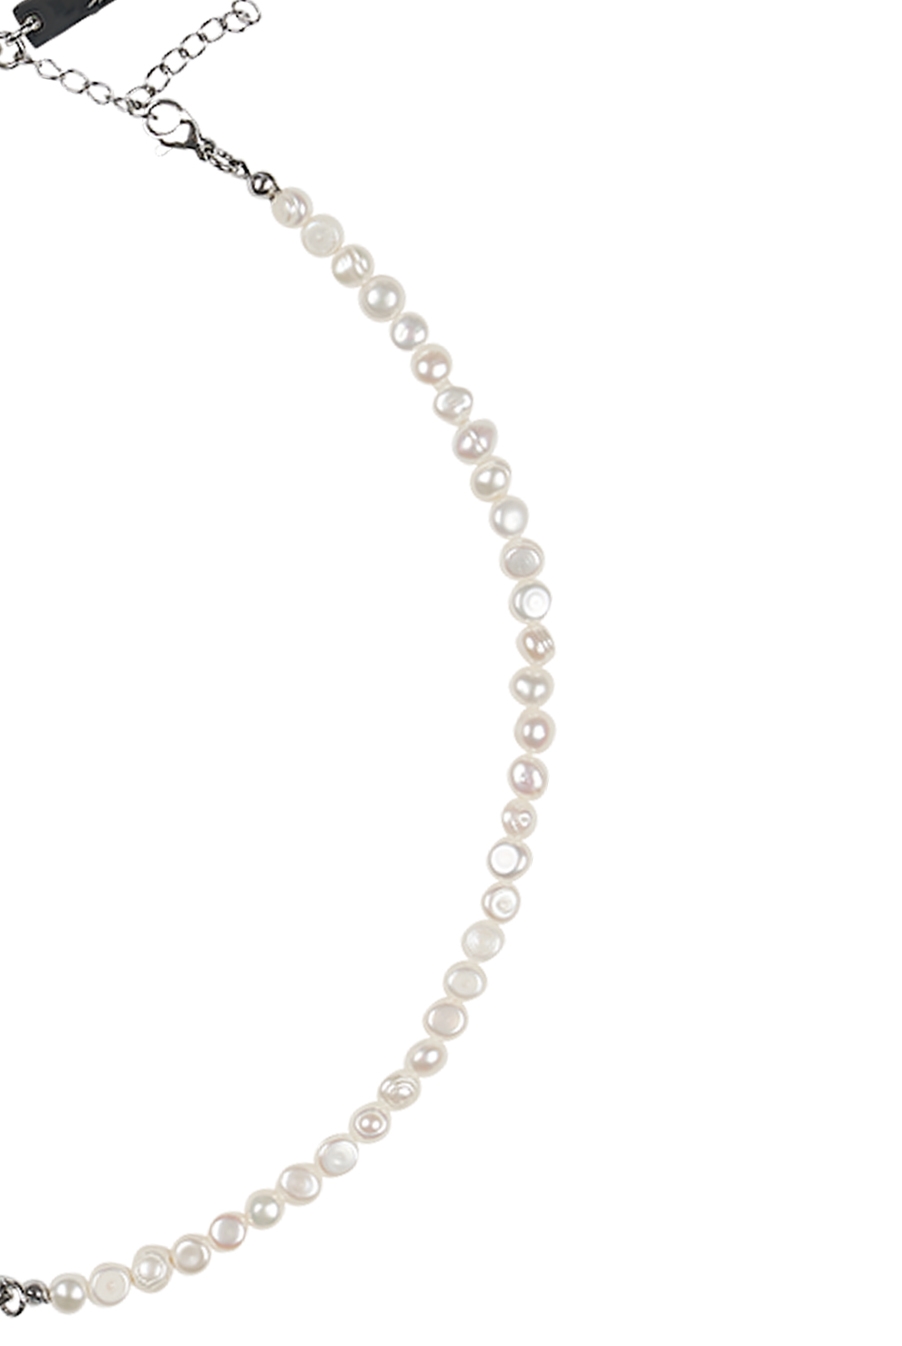 Half & Half Pearl necklace